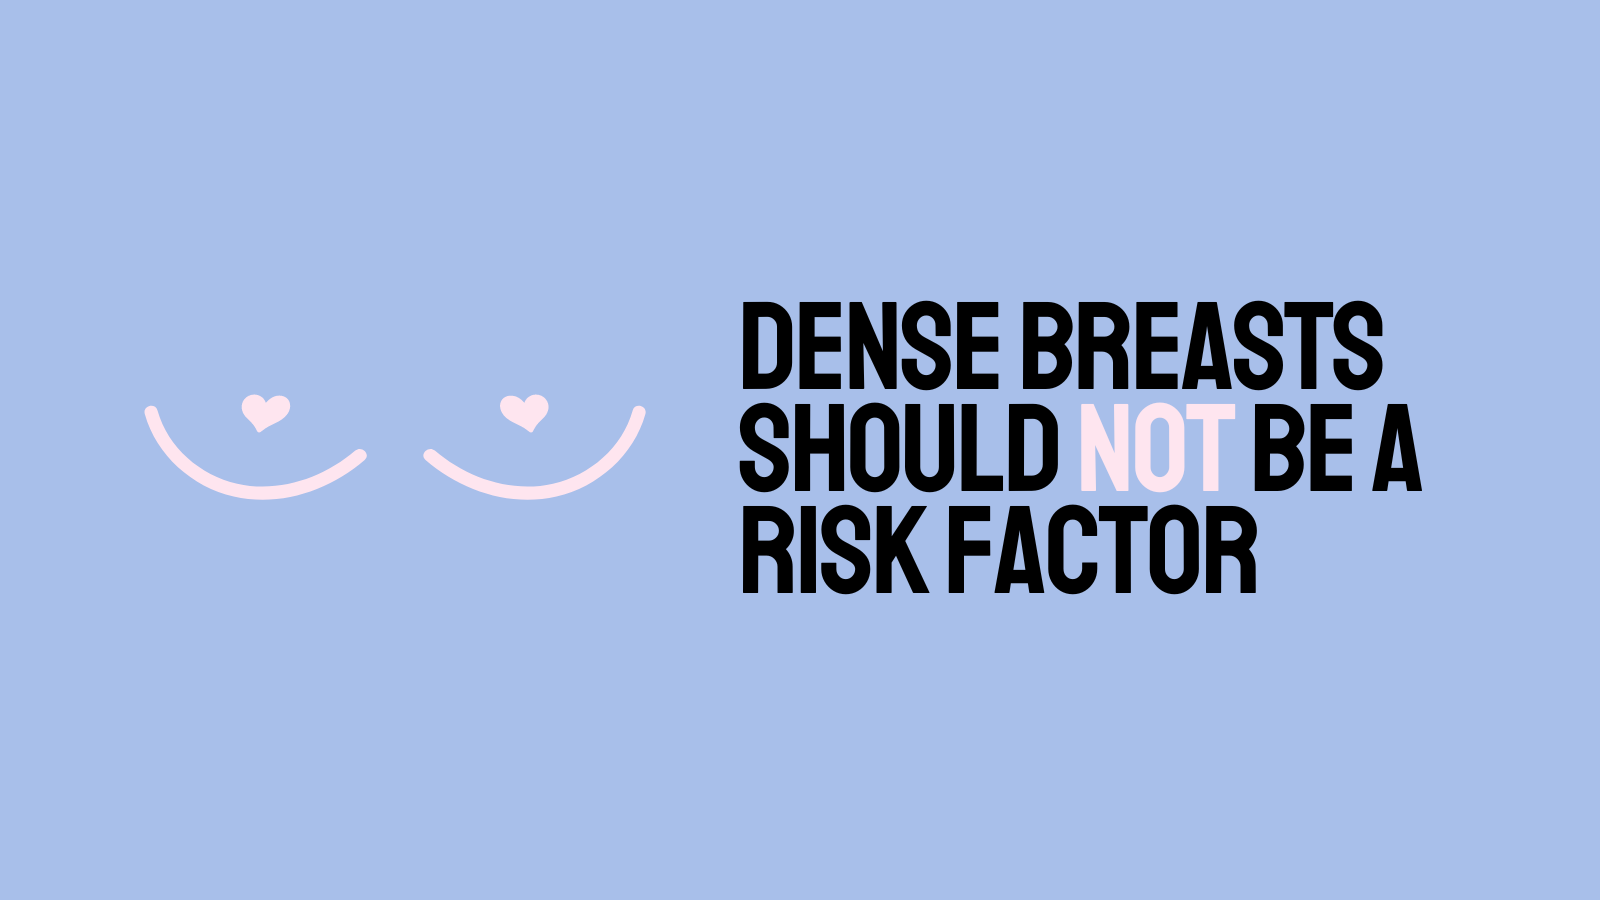 Los senos densos no deberían ser un factor de riesgo